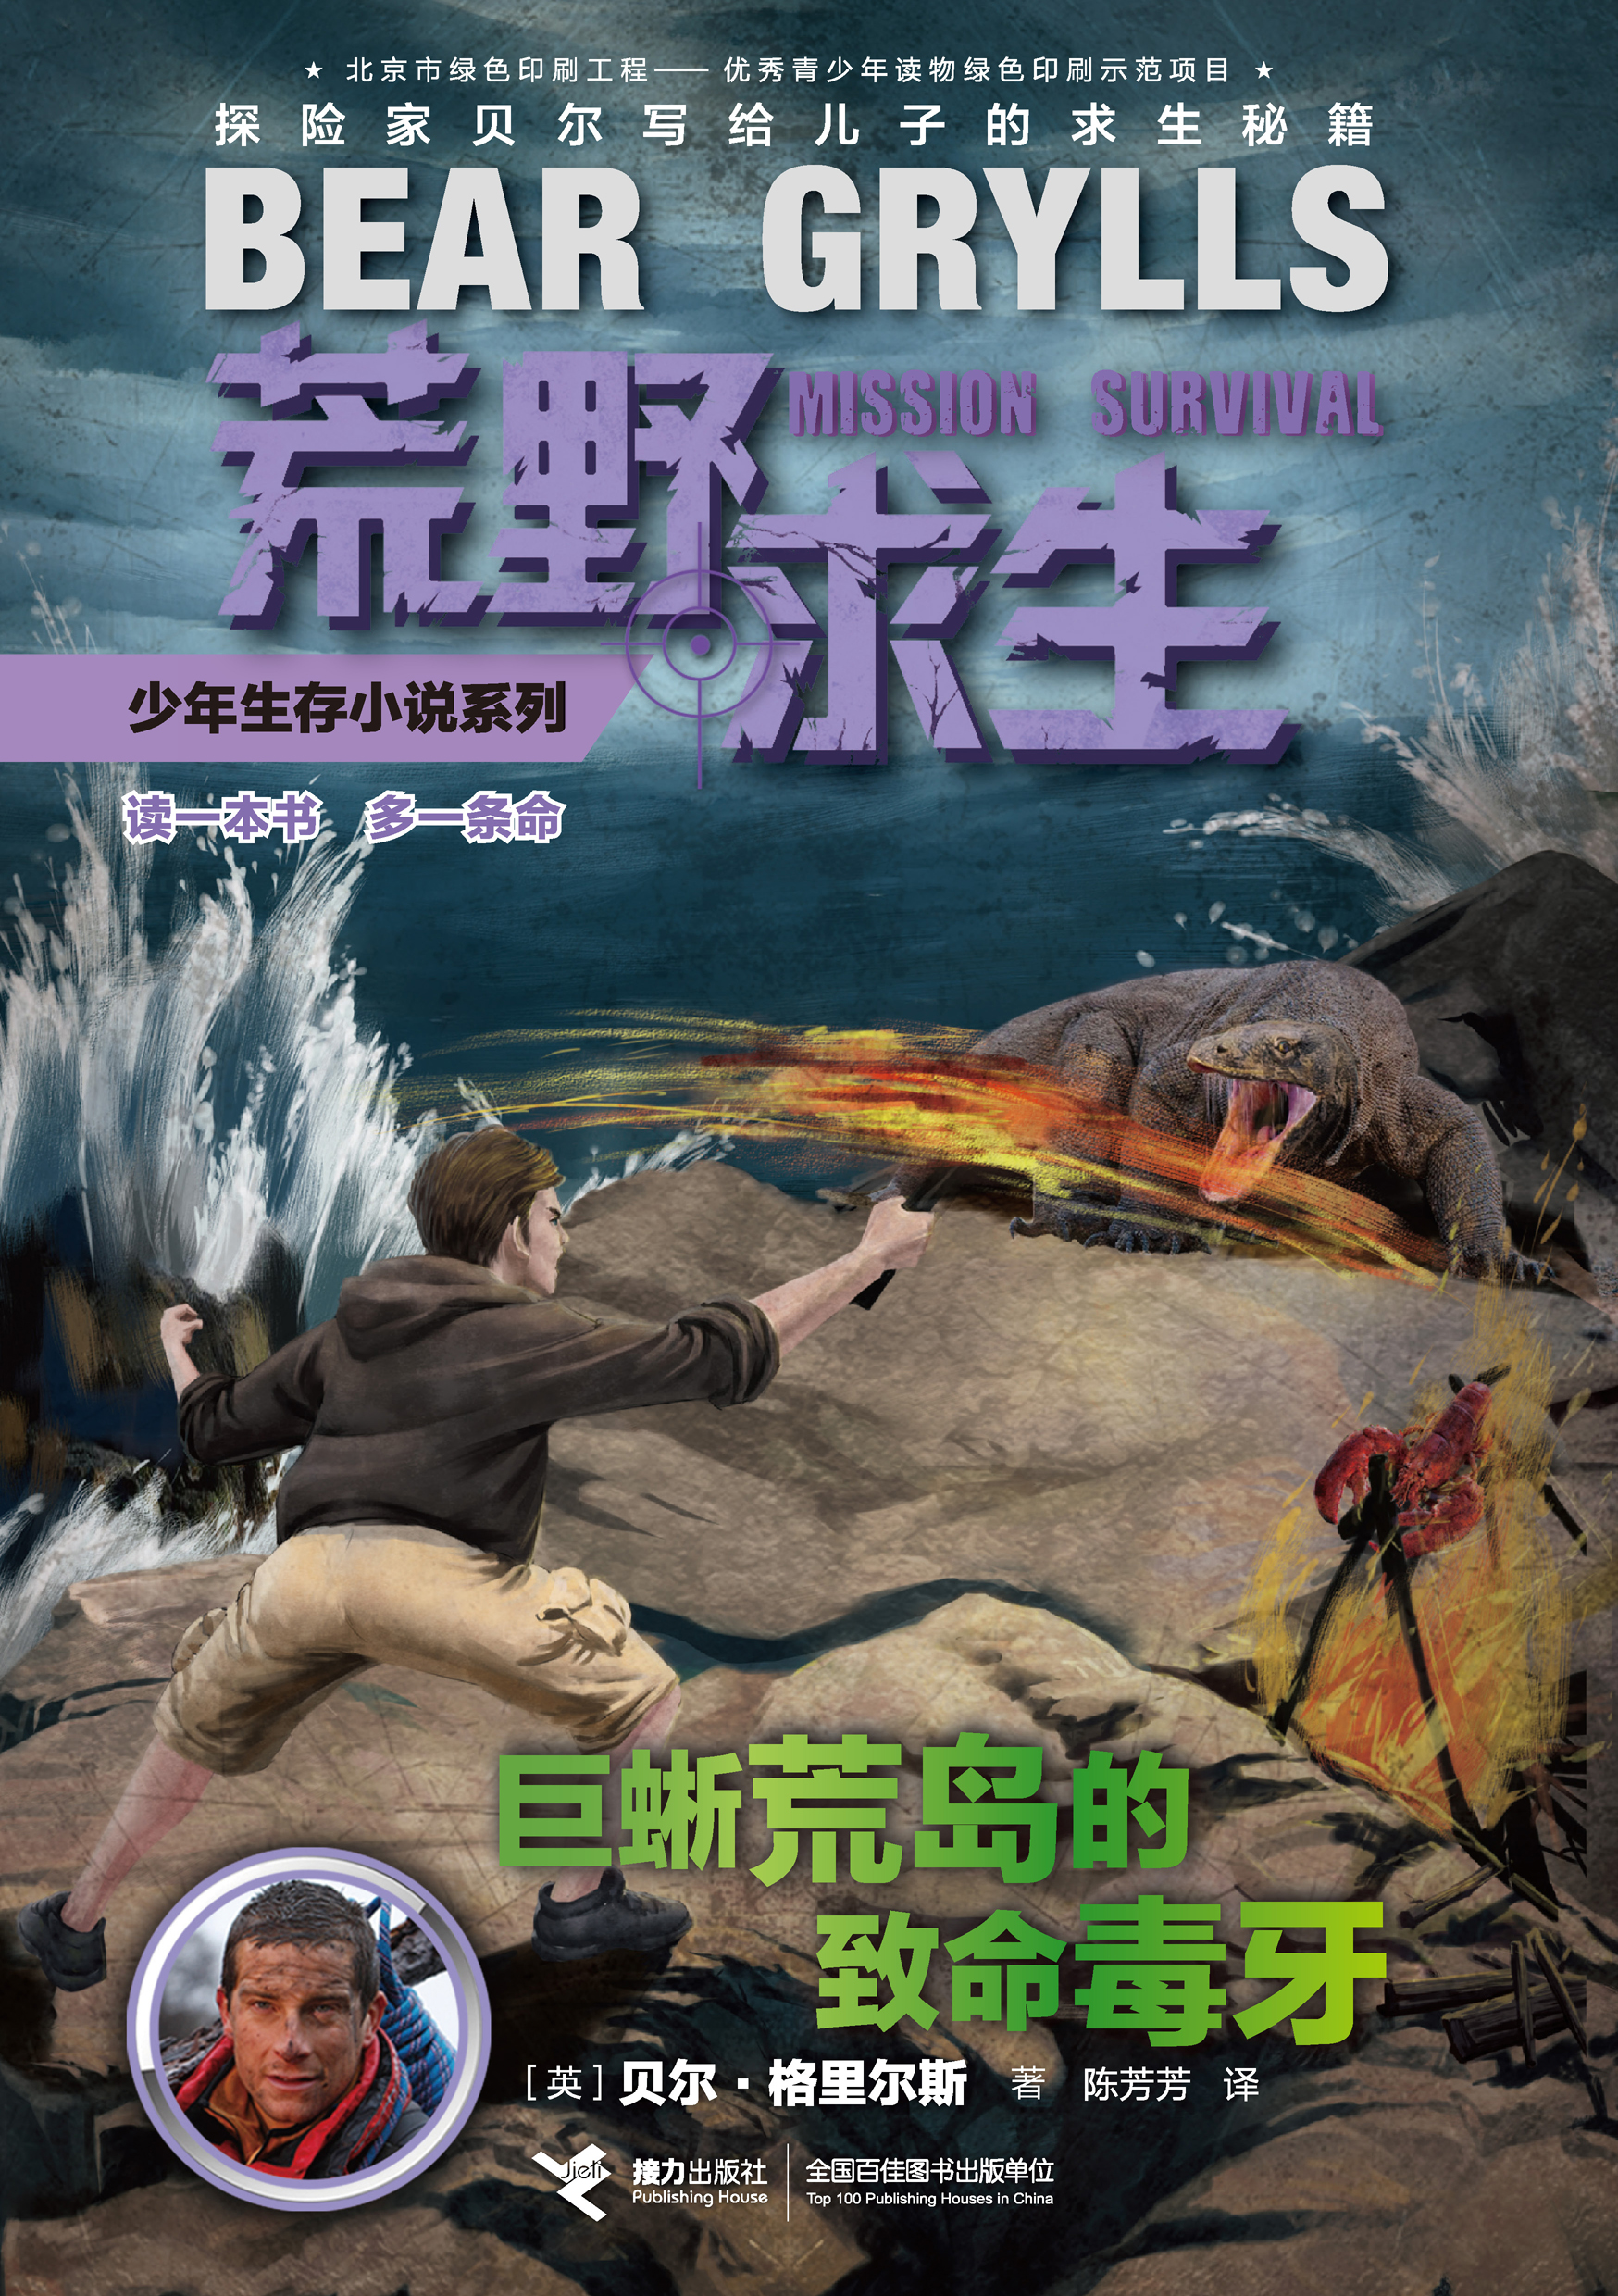 荒野求生少年生存小说系列:巨蜥荒岛的致命毒牙